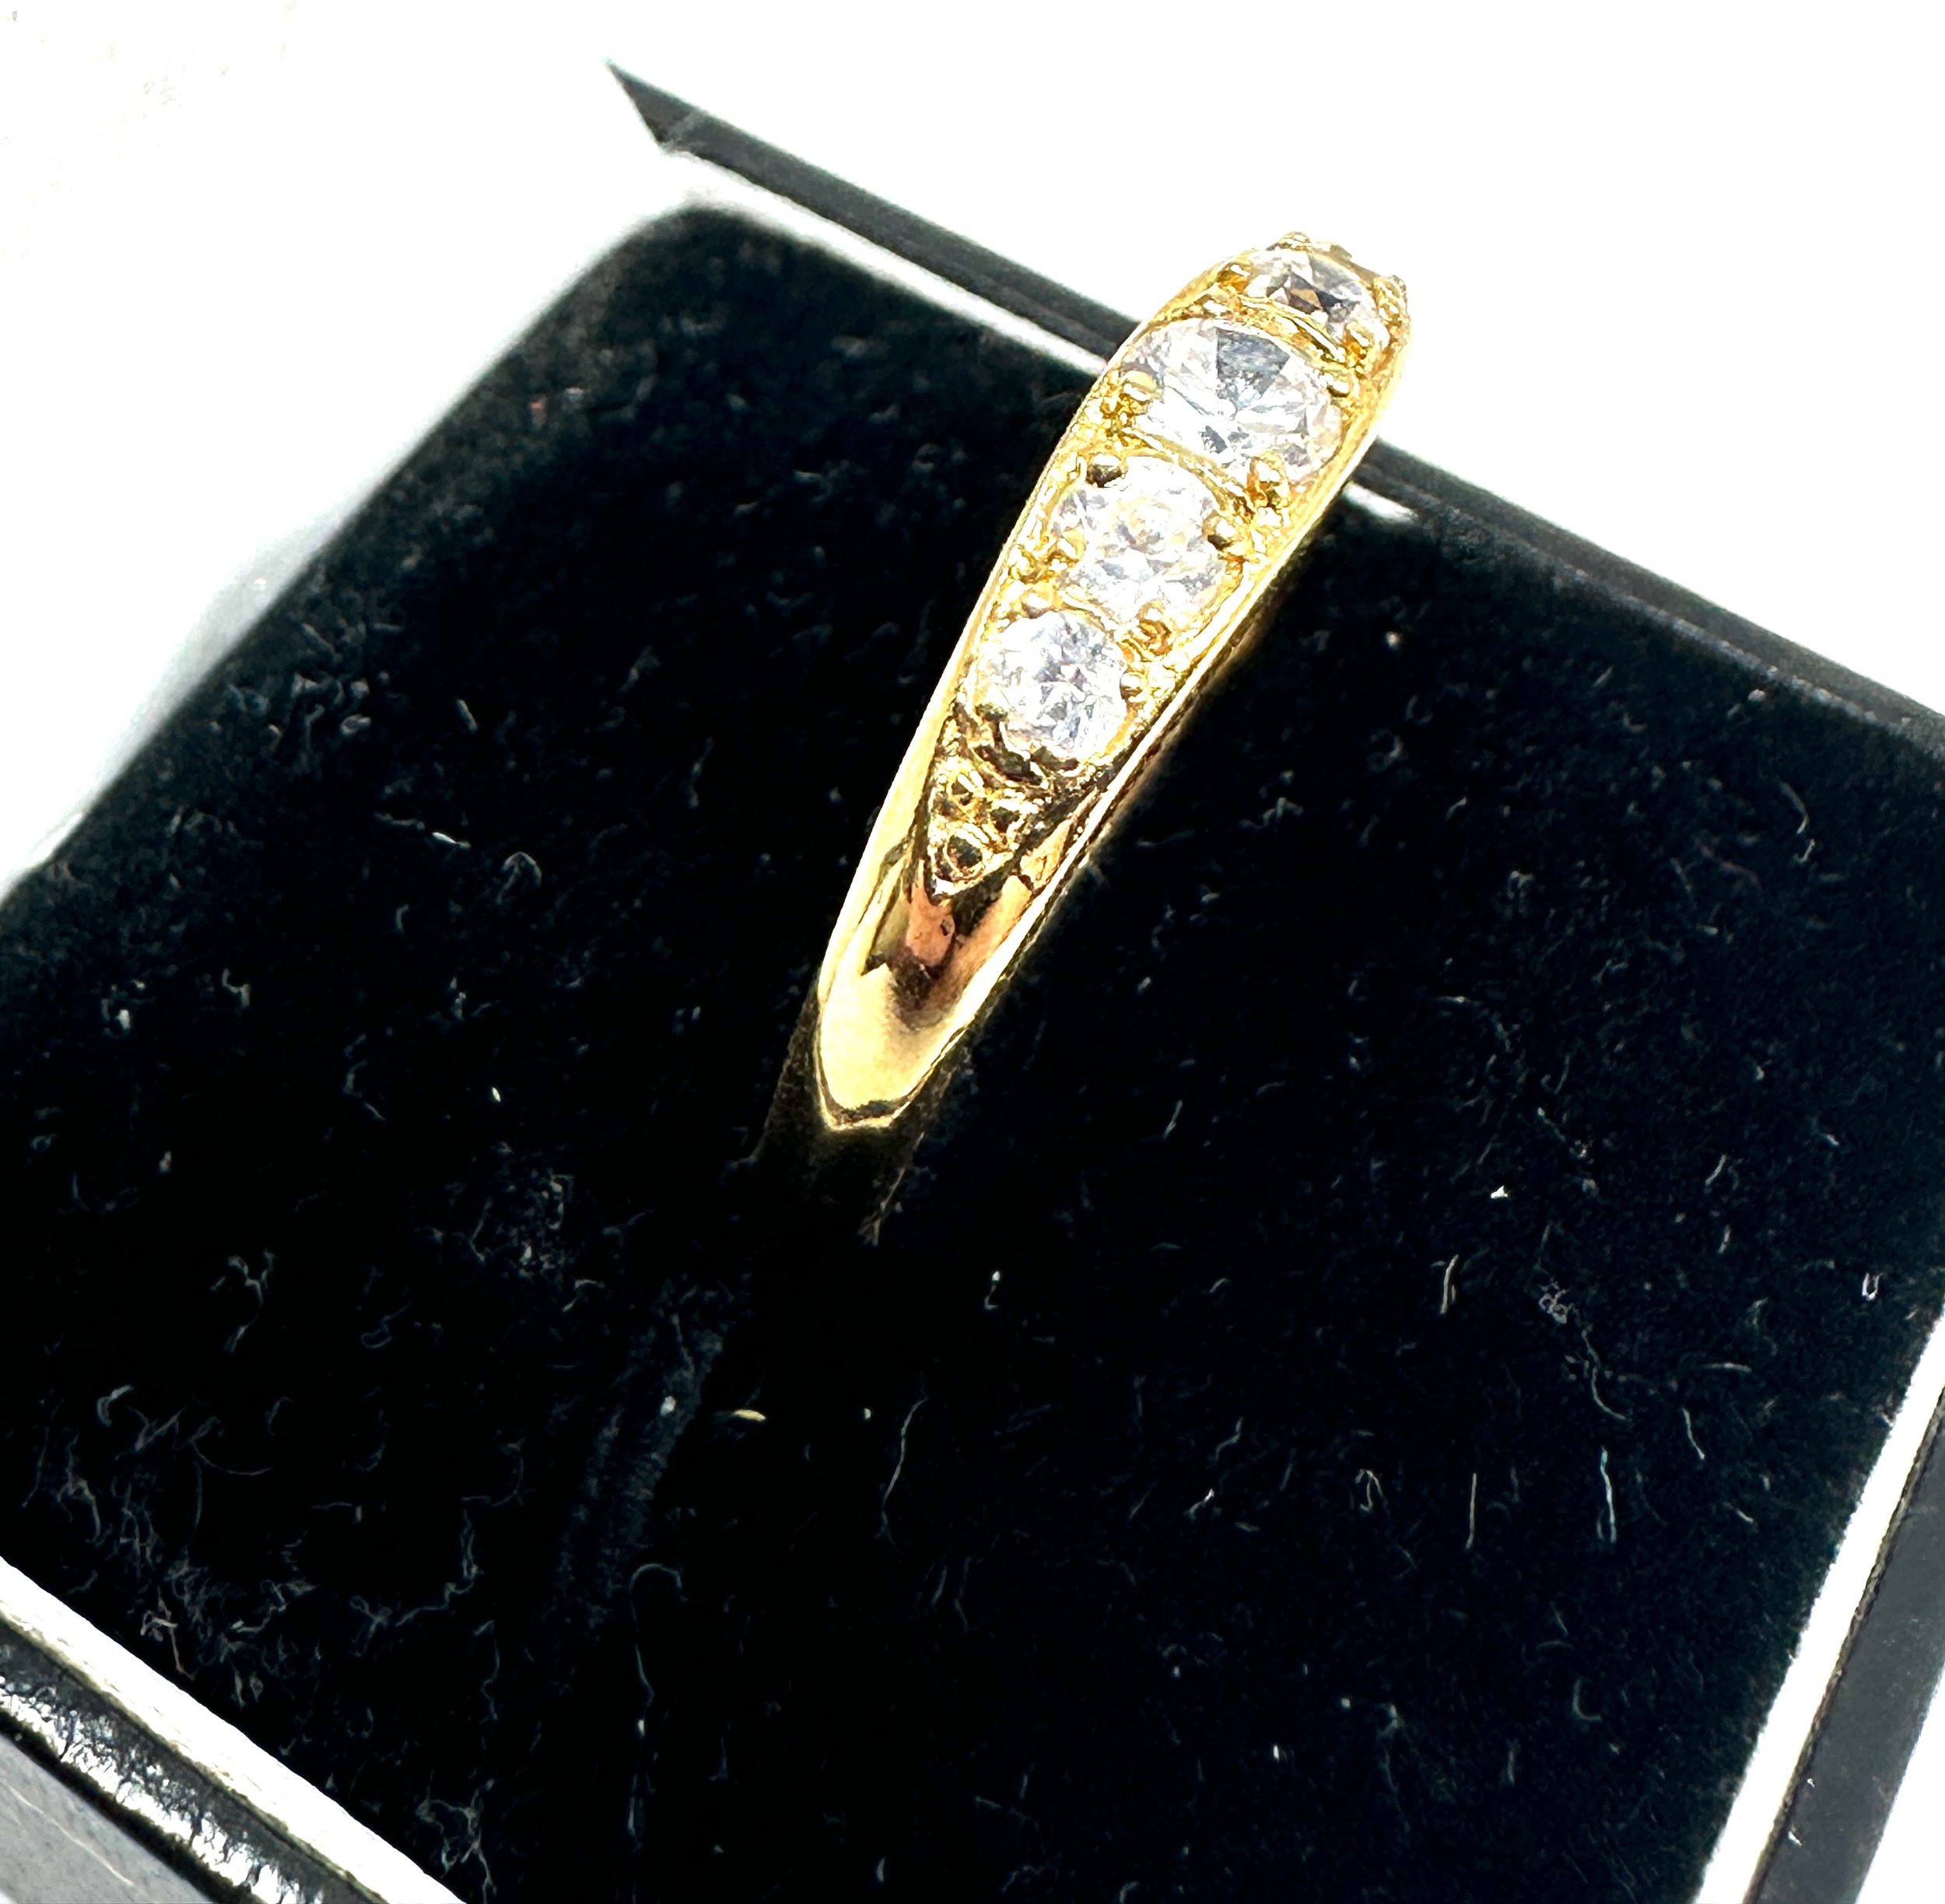 18ct gold white gemstone set ring weight 1.8g - Image 2 of 4